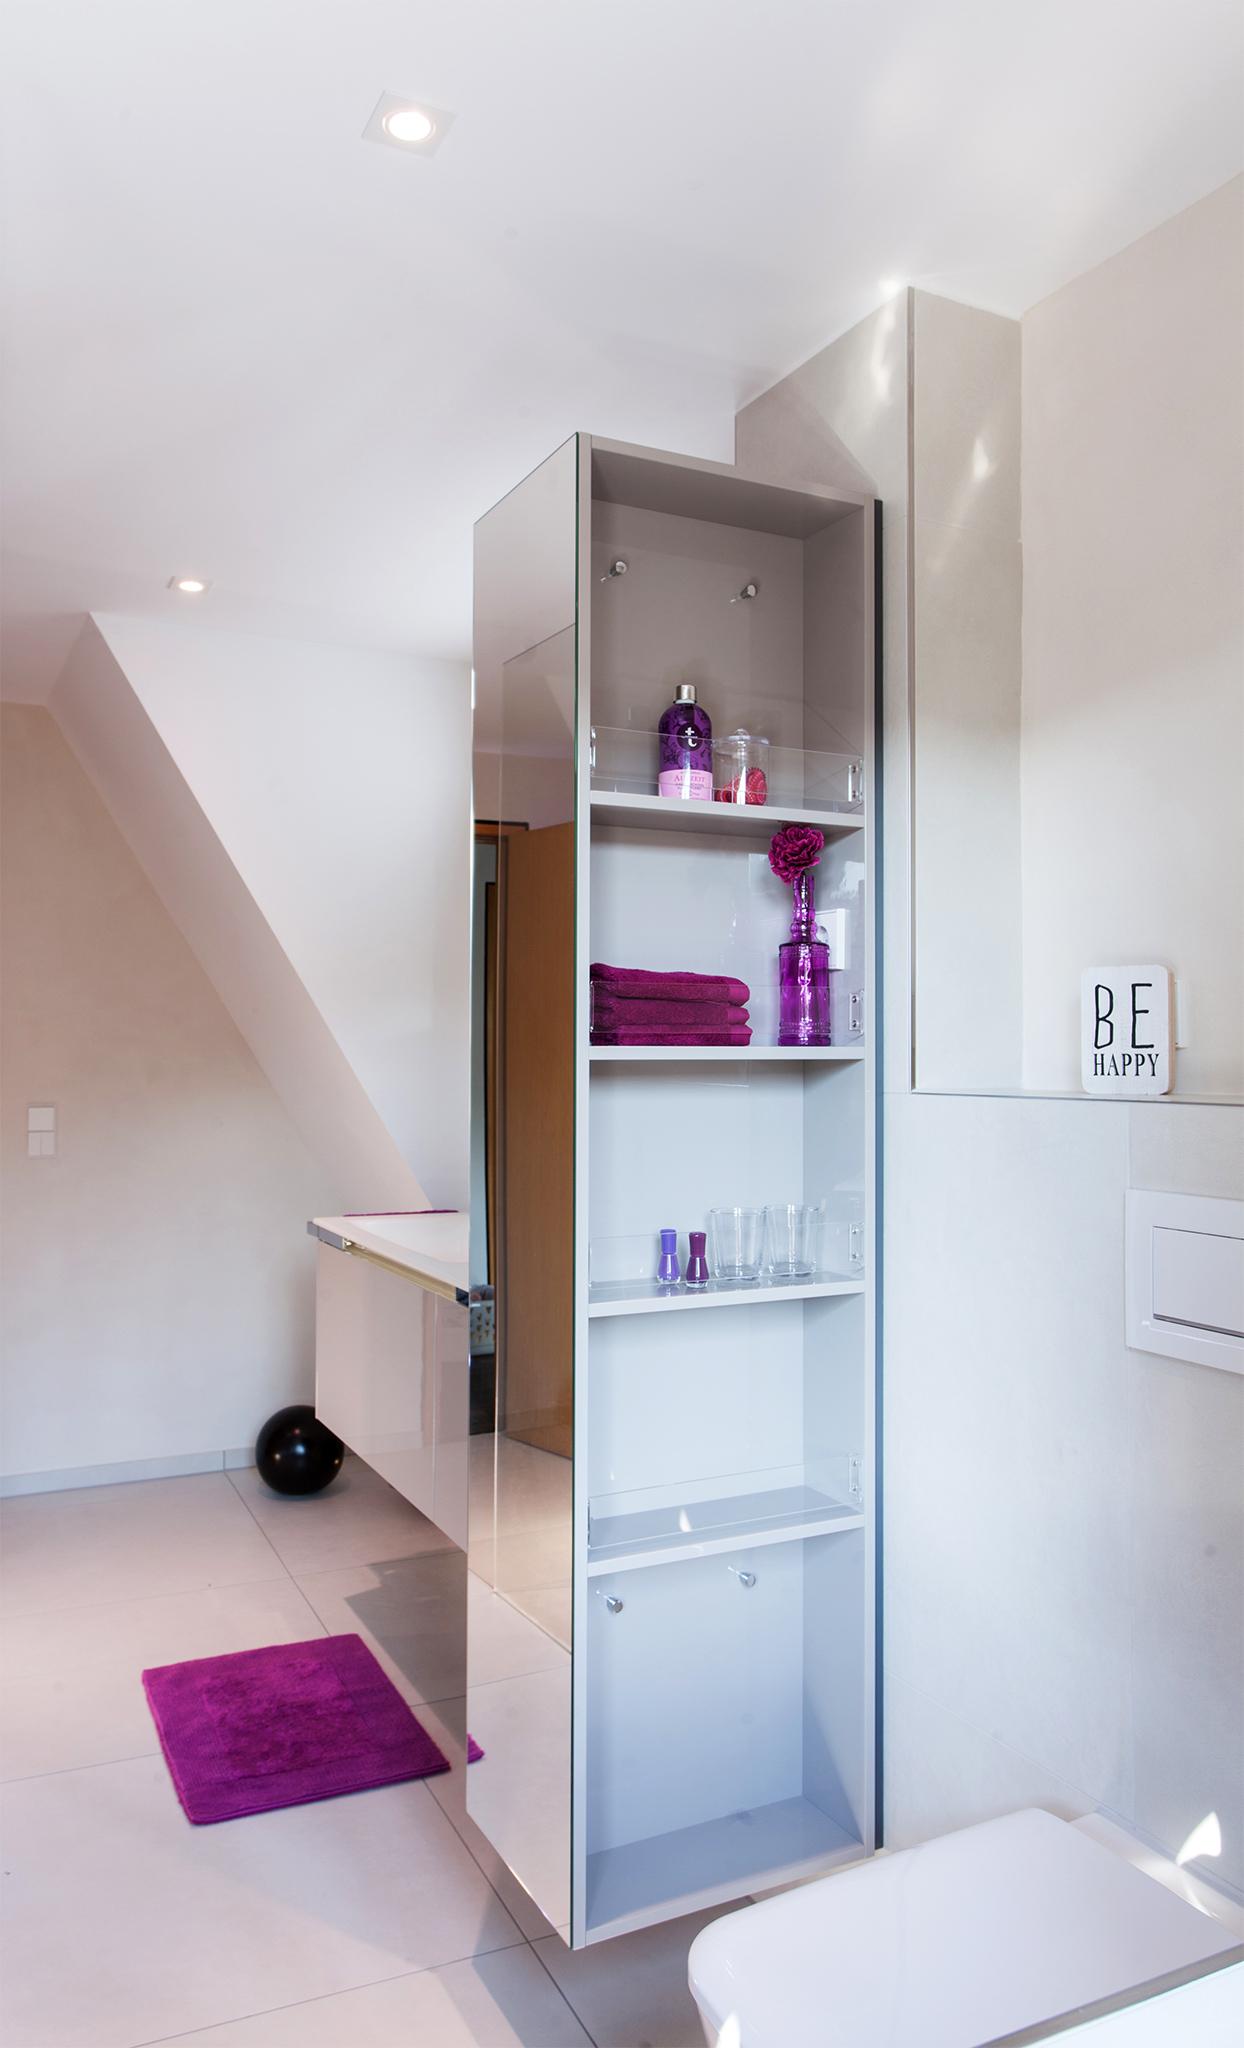 Intelligenter Raumteiler #badezimmer #offenedusche #raumteiler #badezimmerdachschräge ©HEIMWOHL GmbH